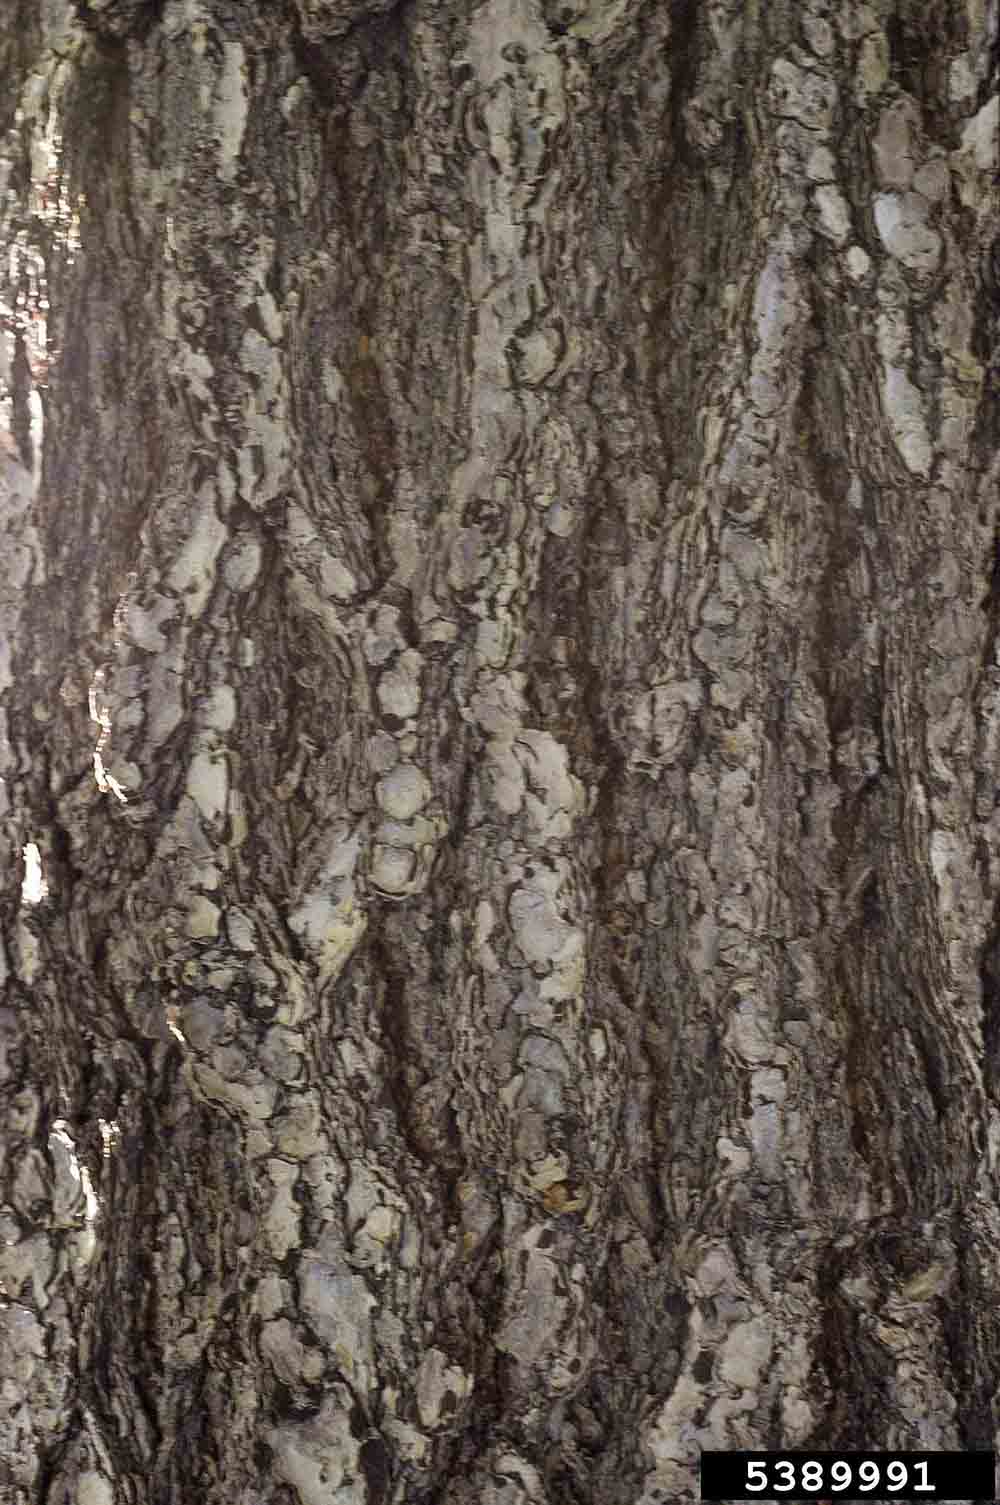 Douglas fir bark on trunk